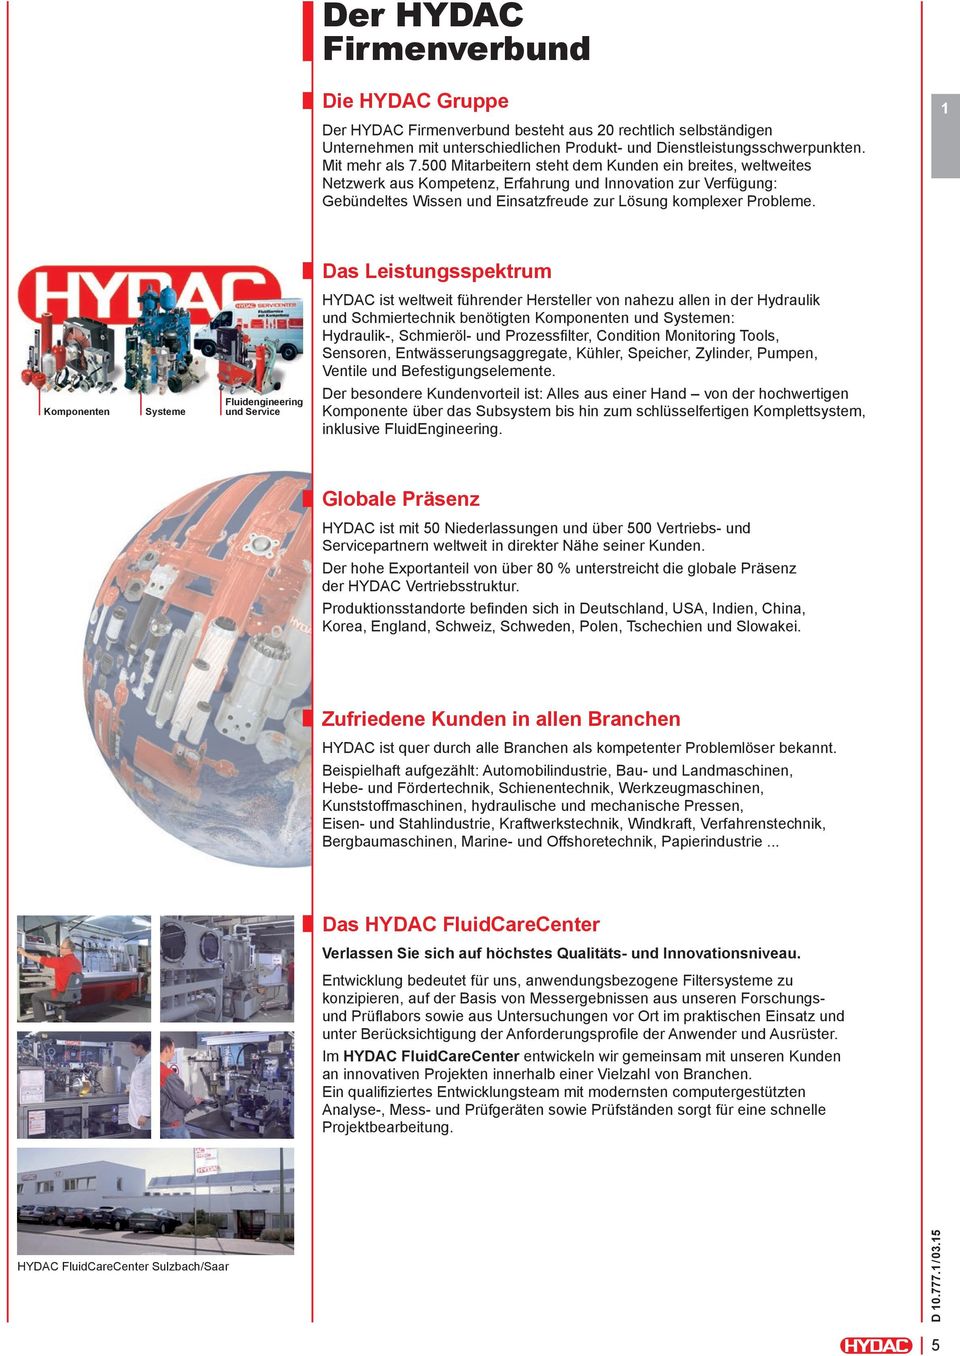 1 Das Leistungsspektrum HYDAC ist weltweit führender Hersteller von nahezu allen in der Hydraulik und Schmiertechnik benötigten Komponenten und Systemen: Hydraulik-, Schmieröl- und Prozessfi lter,